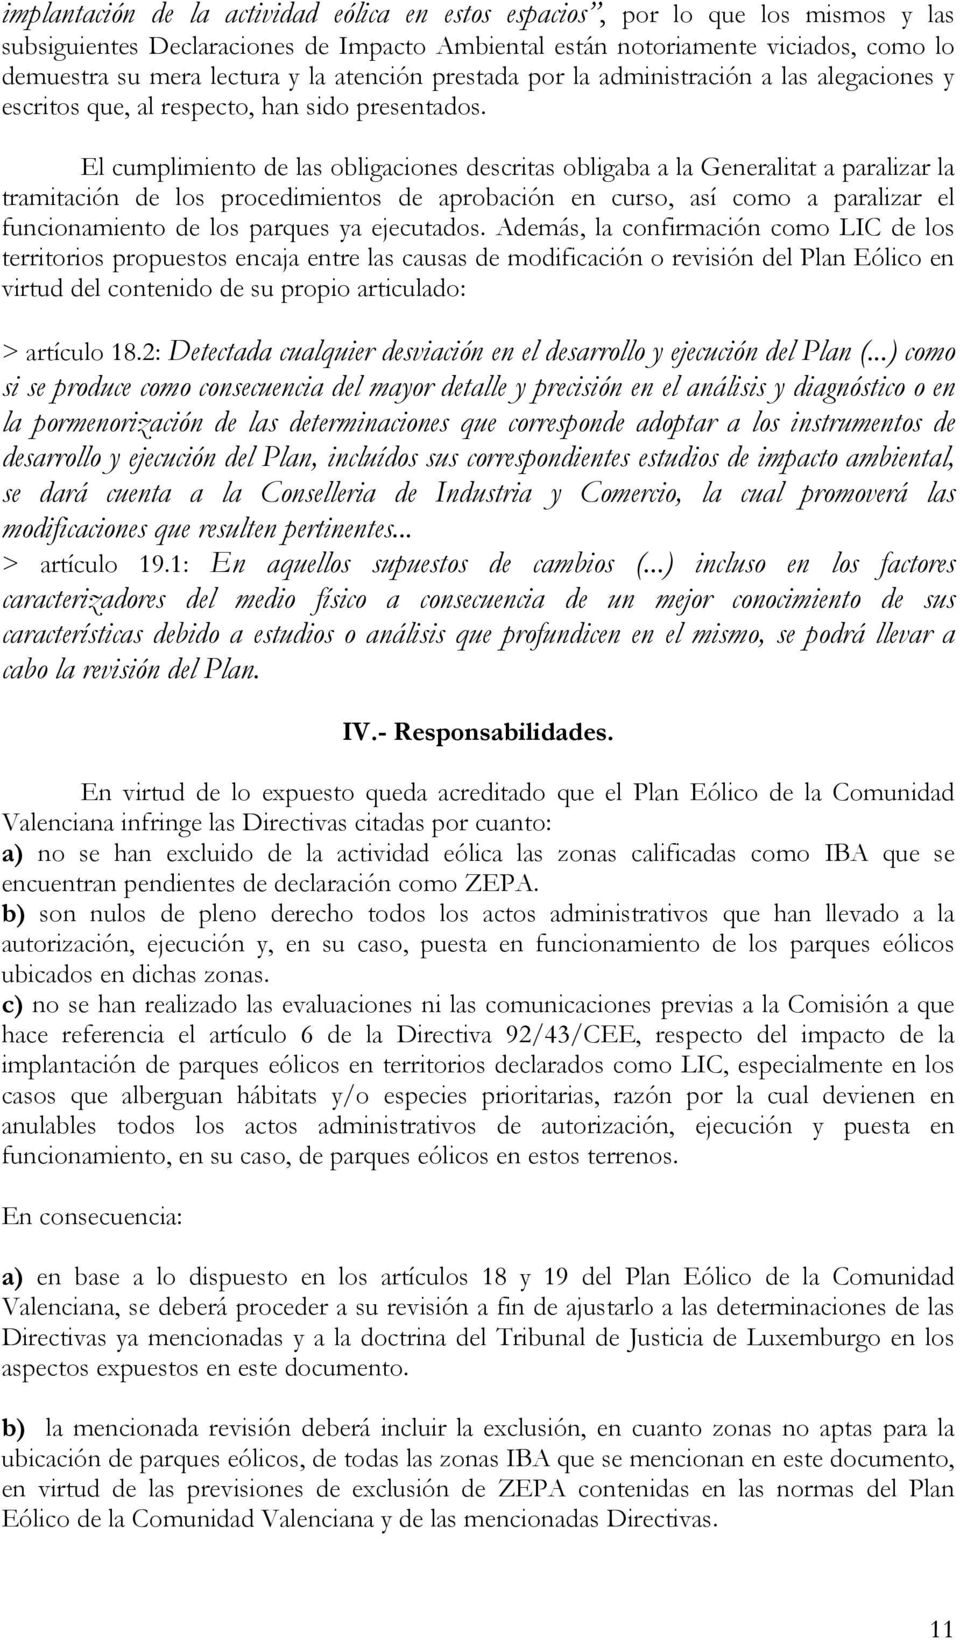 El cumplimiento de las obligaciones descritas obligaba a la Generalitat a paralizar la tramitación de los procedimientos de aprobación en curso, así como a paralizar el funcionamiento de los parques